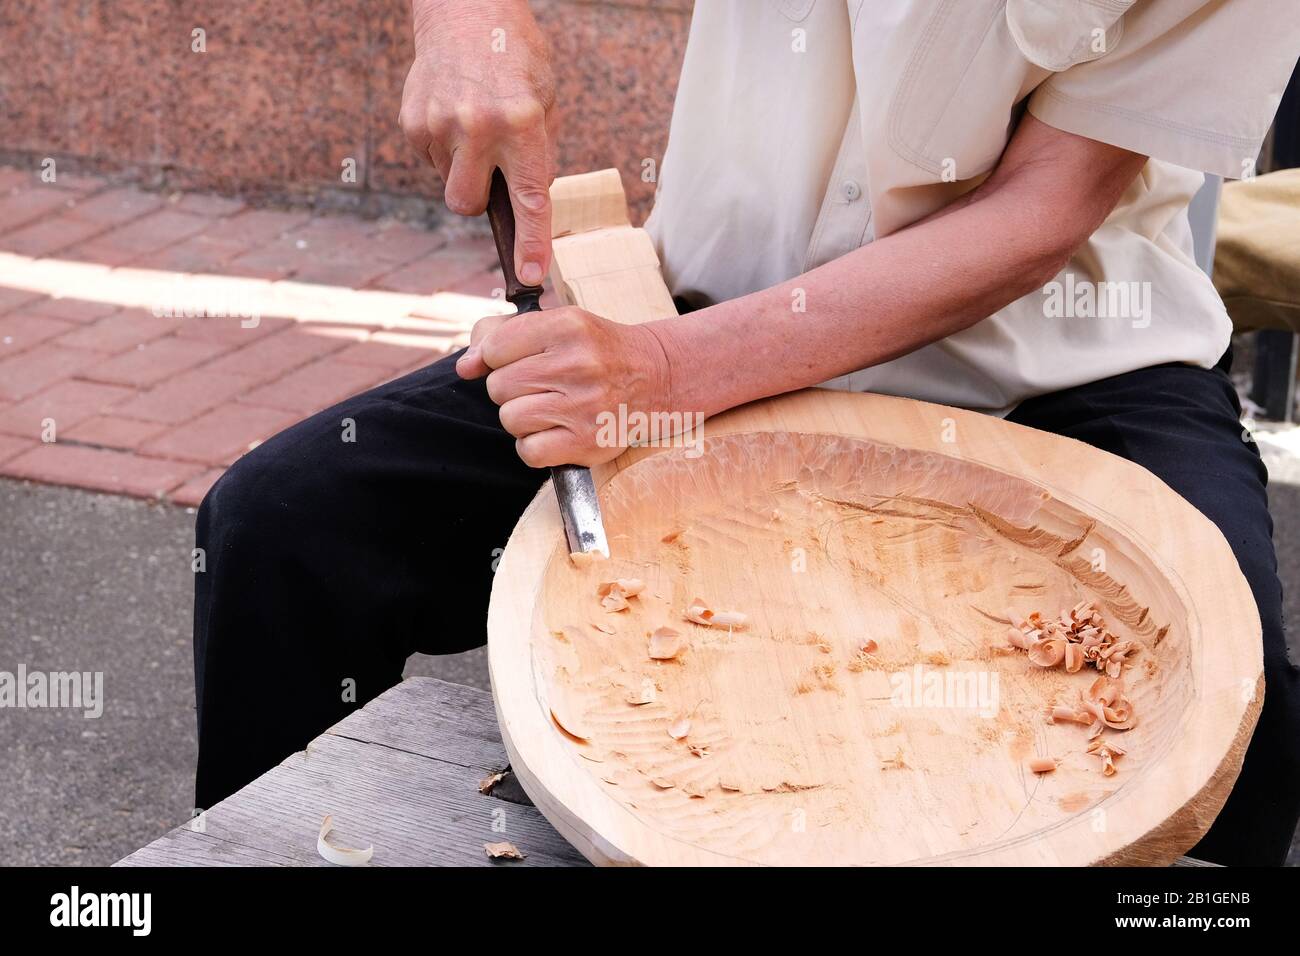 Holzschnitzerei. Professioneller Zimmermann schnitzt Holzhandwerk mit einem Holzbearbeitungswerkzeug, Hände nah oben. Zimmerei und Handwerkskunst. Stockfoto